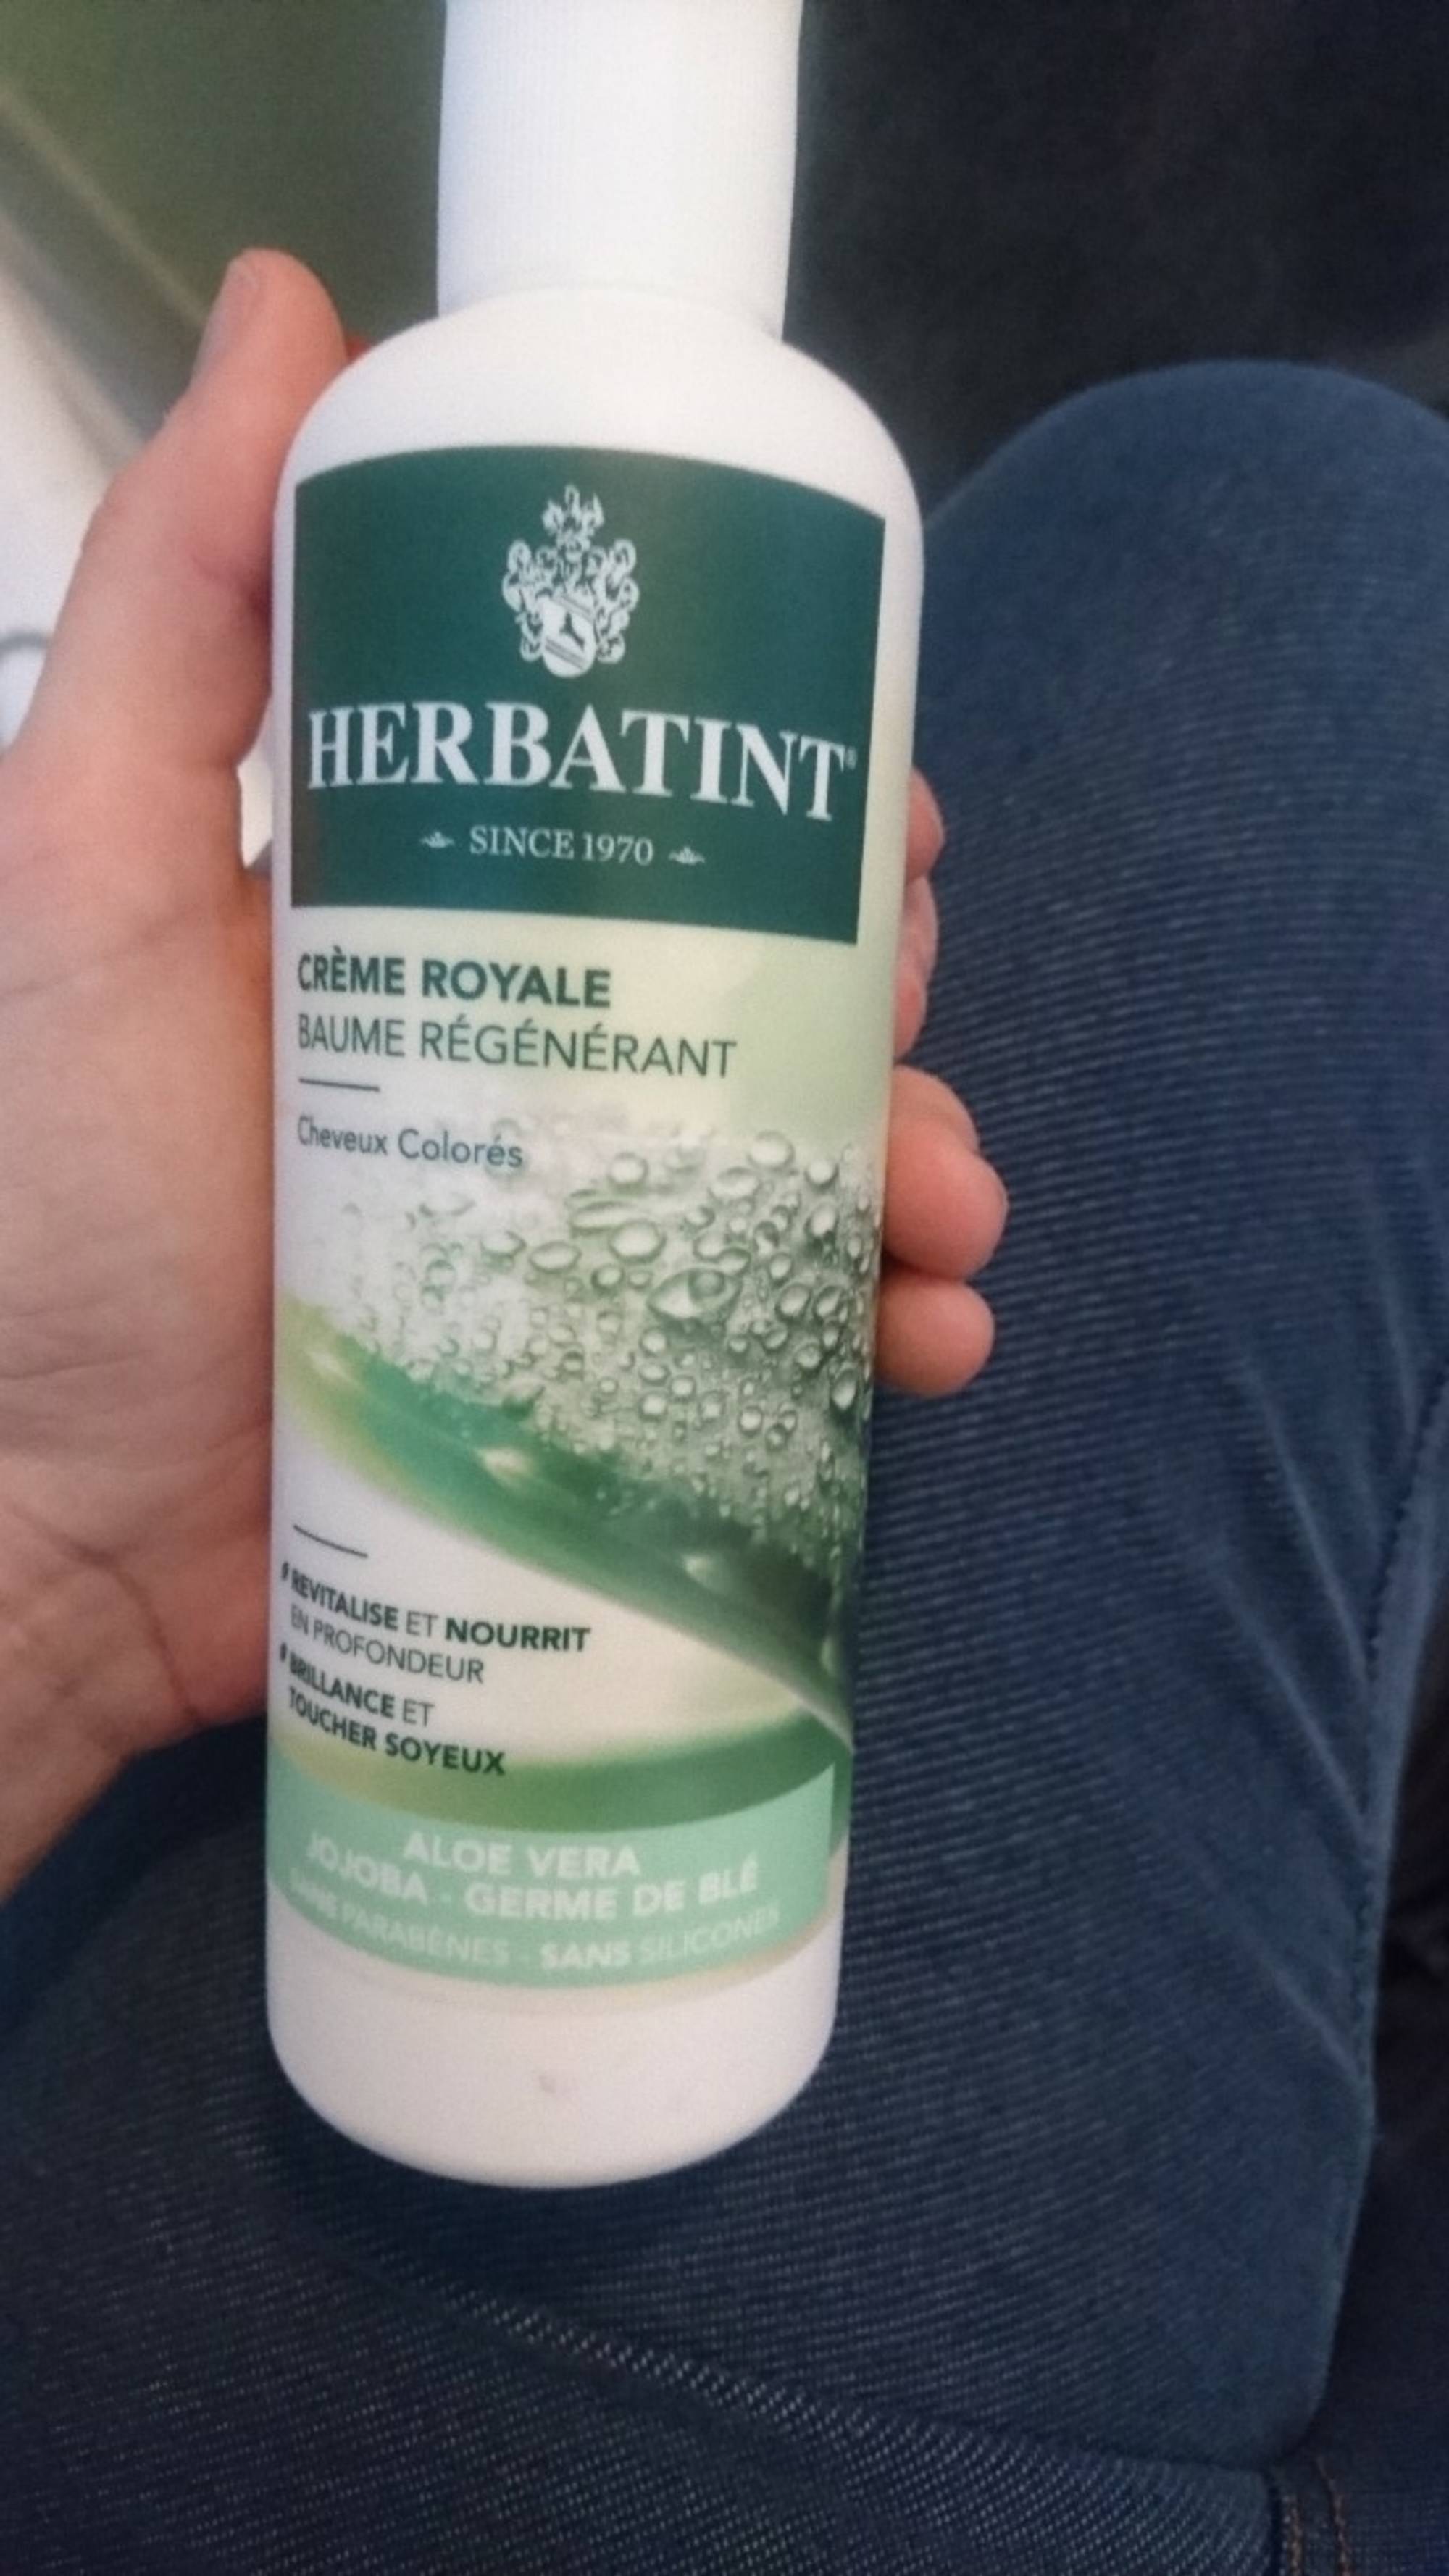 HERBATINT - Aloe vera - Crème royale baume régénérant